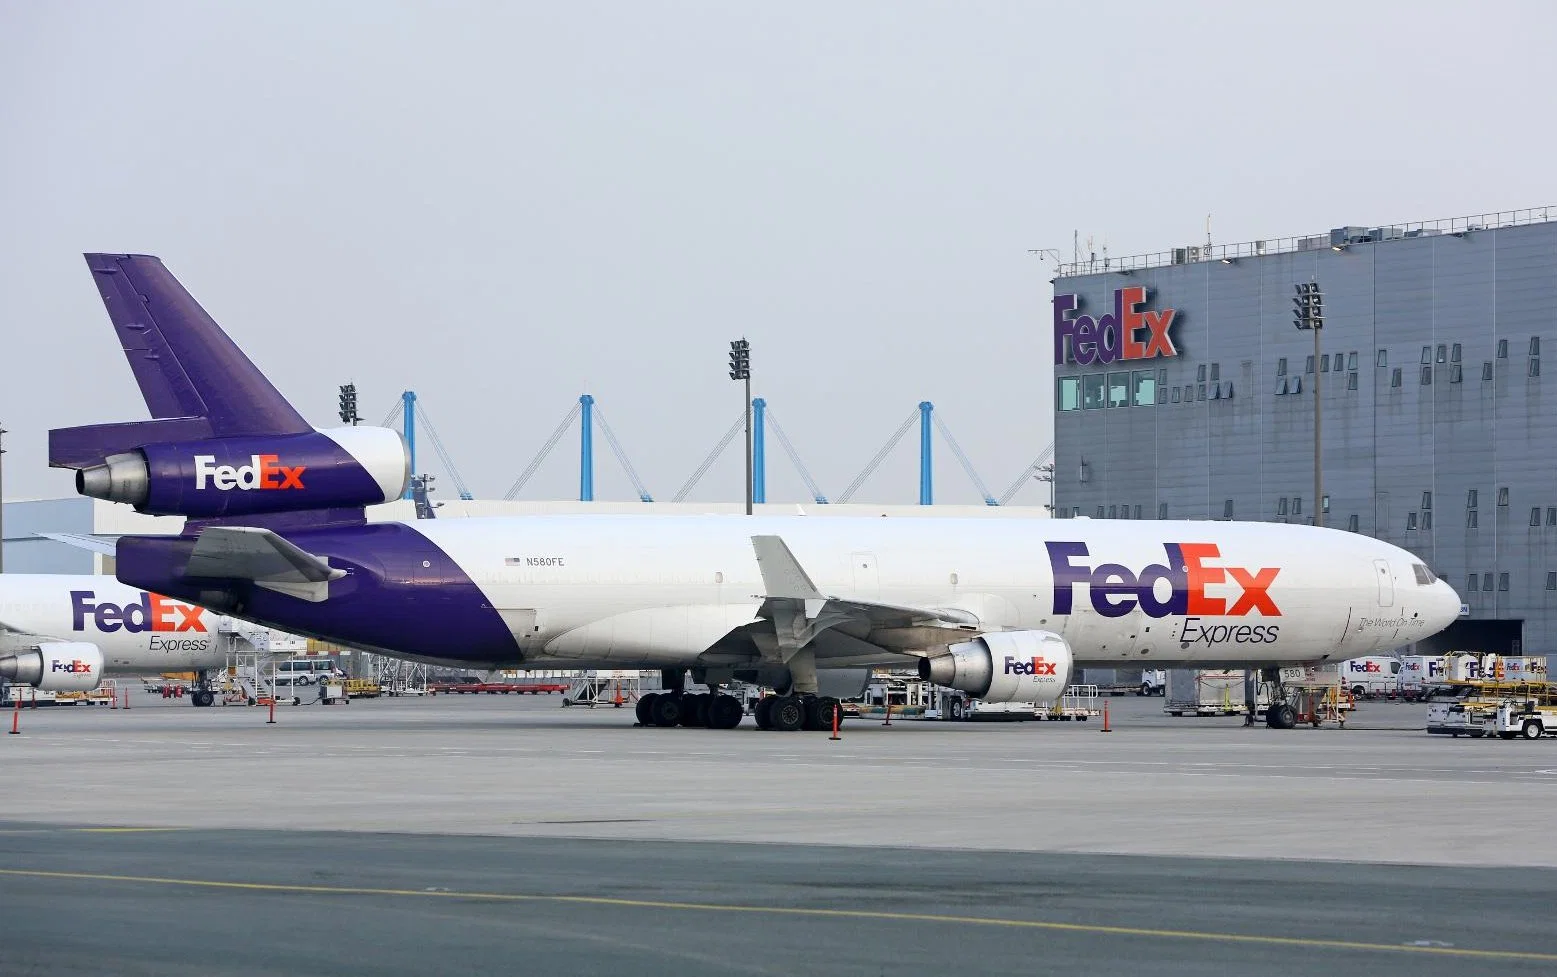 UPS/FedEx Kurierservice Tür-zu-Tür-Lieferung nach Georgewashington, Boston, Chicago, New York, San Francisco von Guangzhou, Shenzhen, Shanghai in China